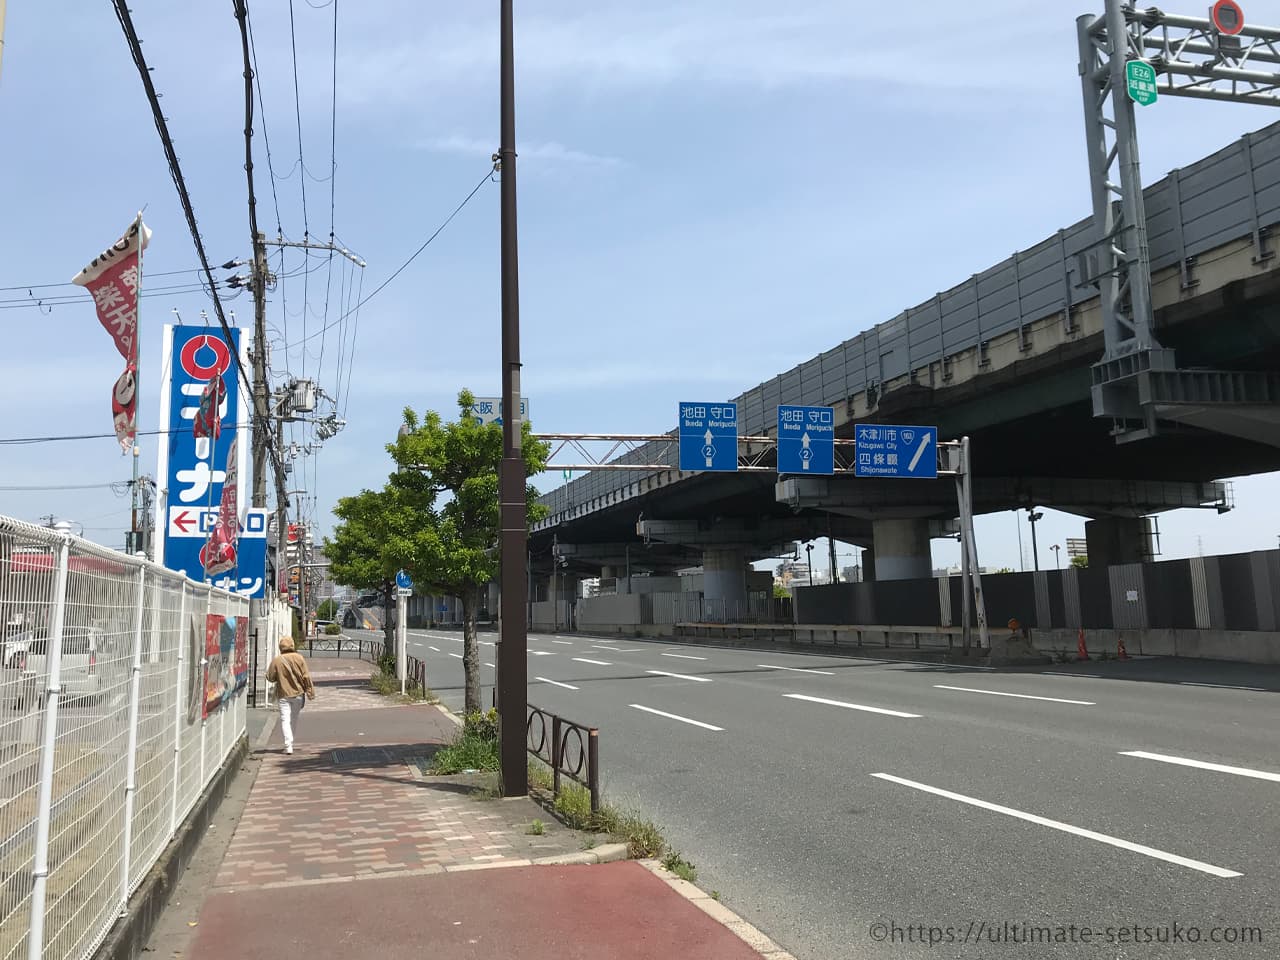 コストコ大阪門真倉庫店は23年春頃オープン予定 現地の写真も撮ってきた